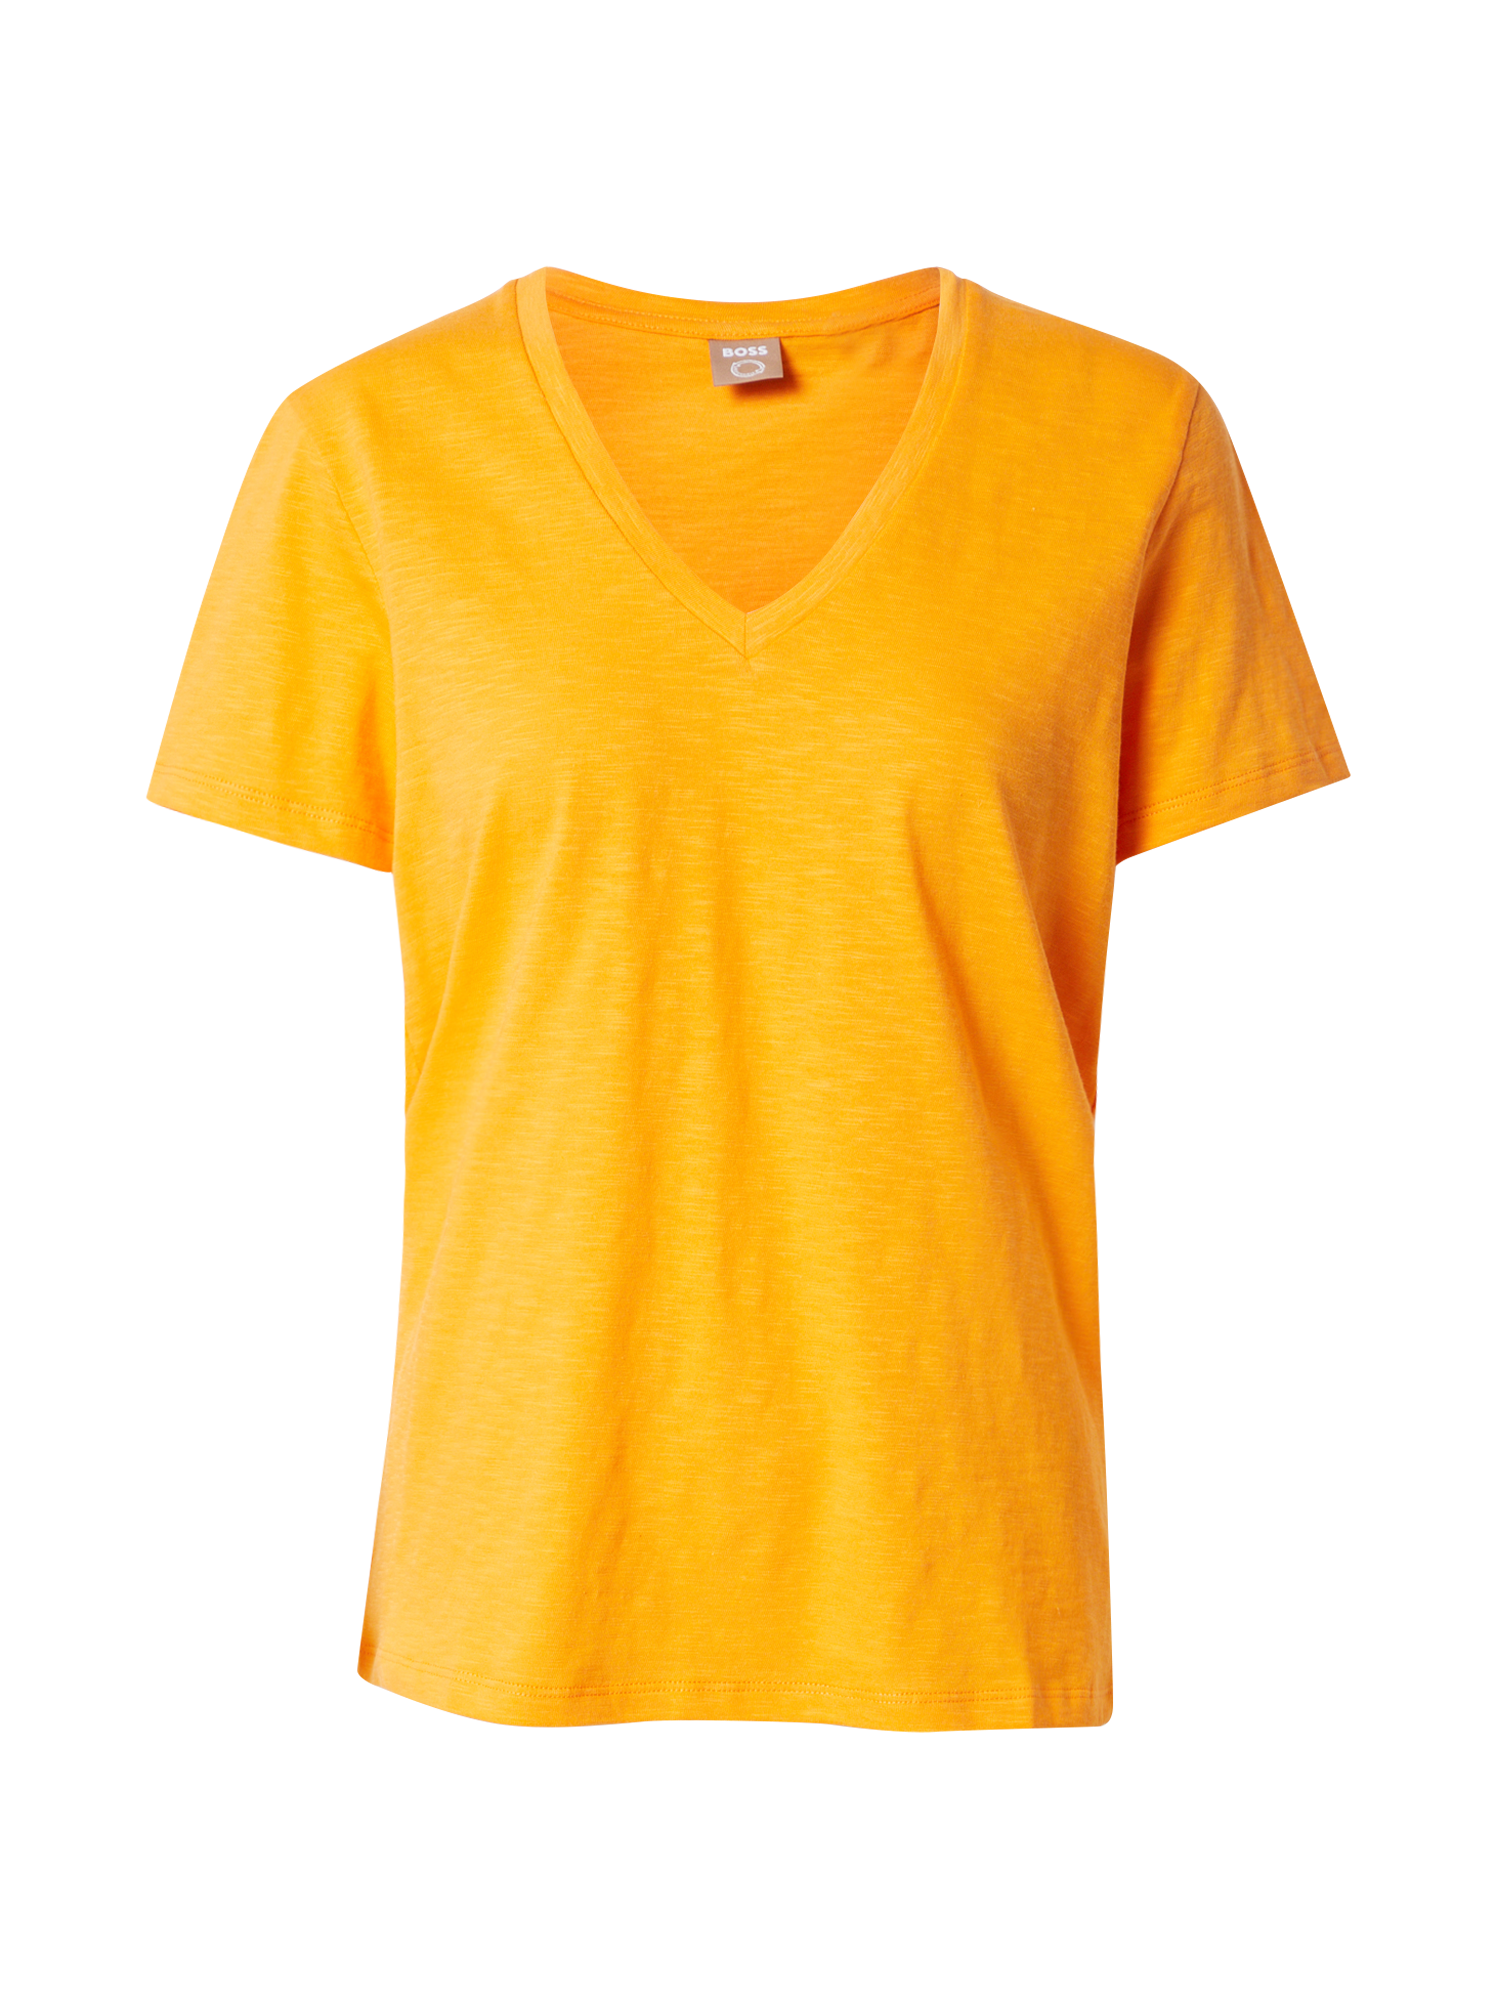 Odzież Kobiety BOSS Casual Koszulka w kolorze Pomarańczowym 